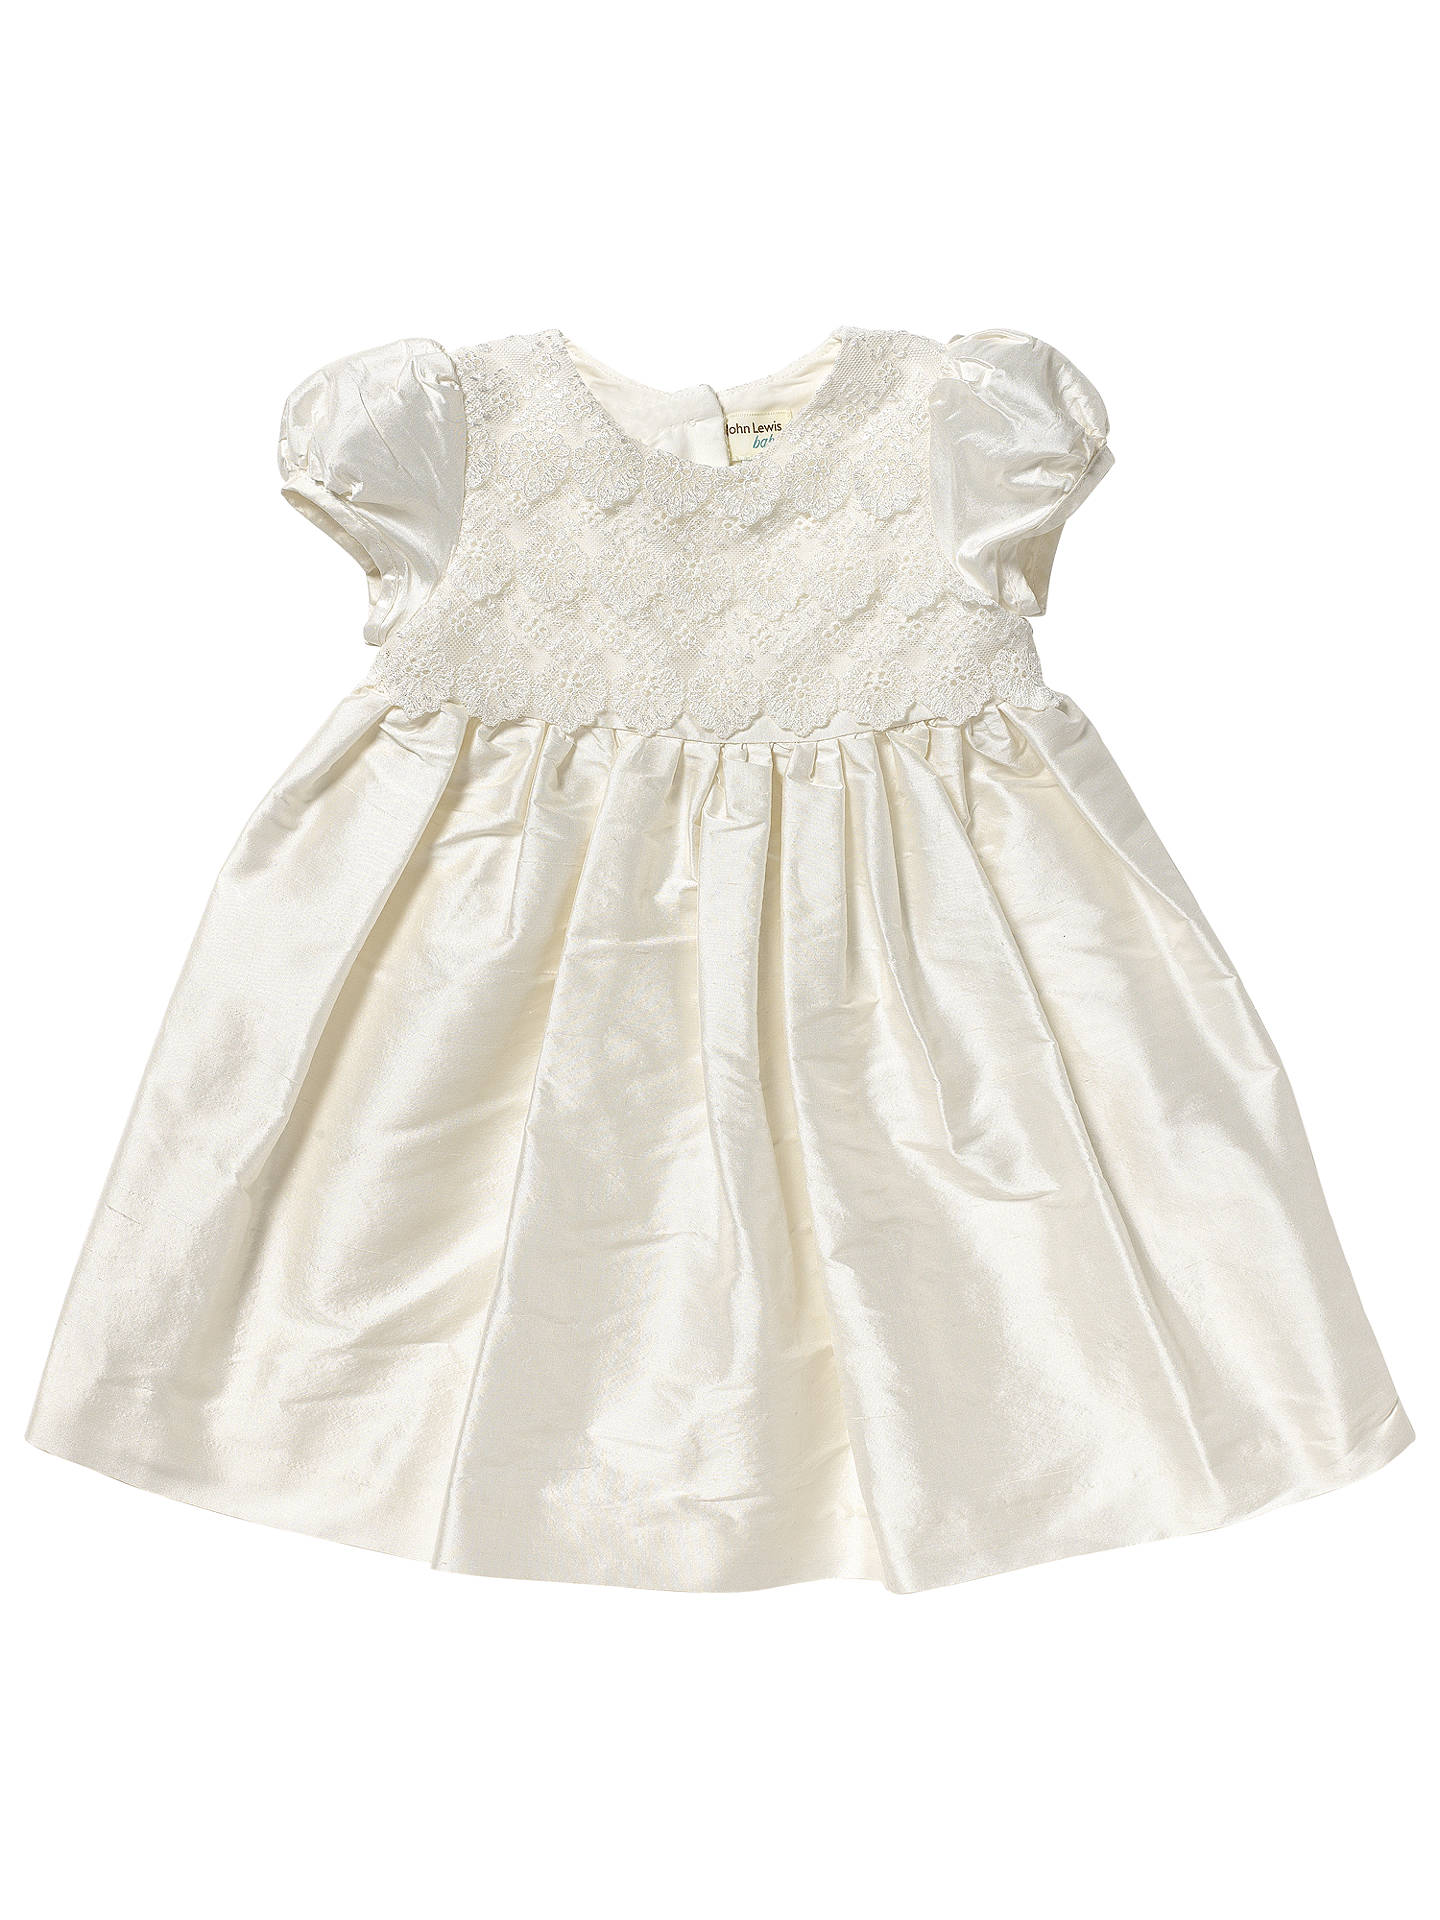 John Lewis Baby Lace Silk Christening Dress, Cream at John Lewis & Partners